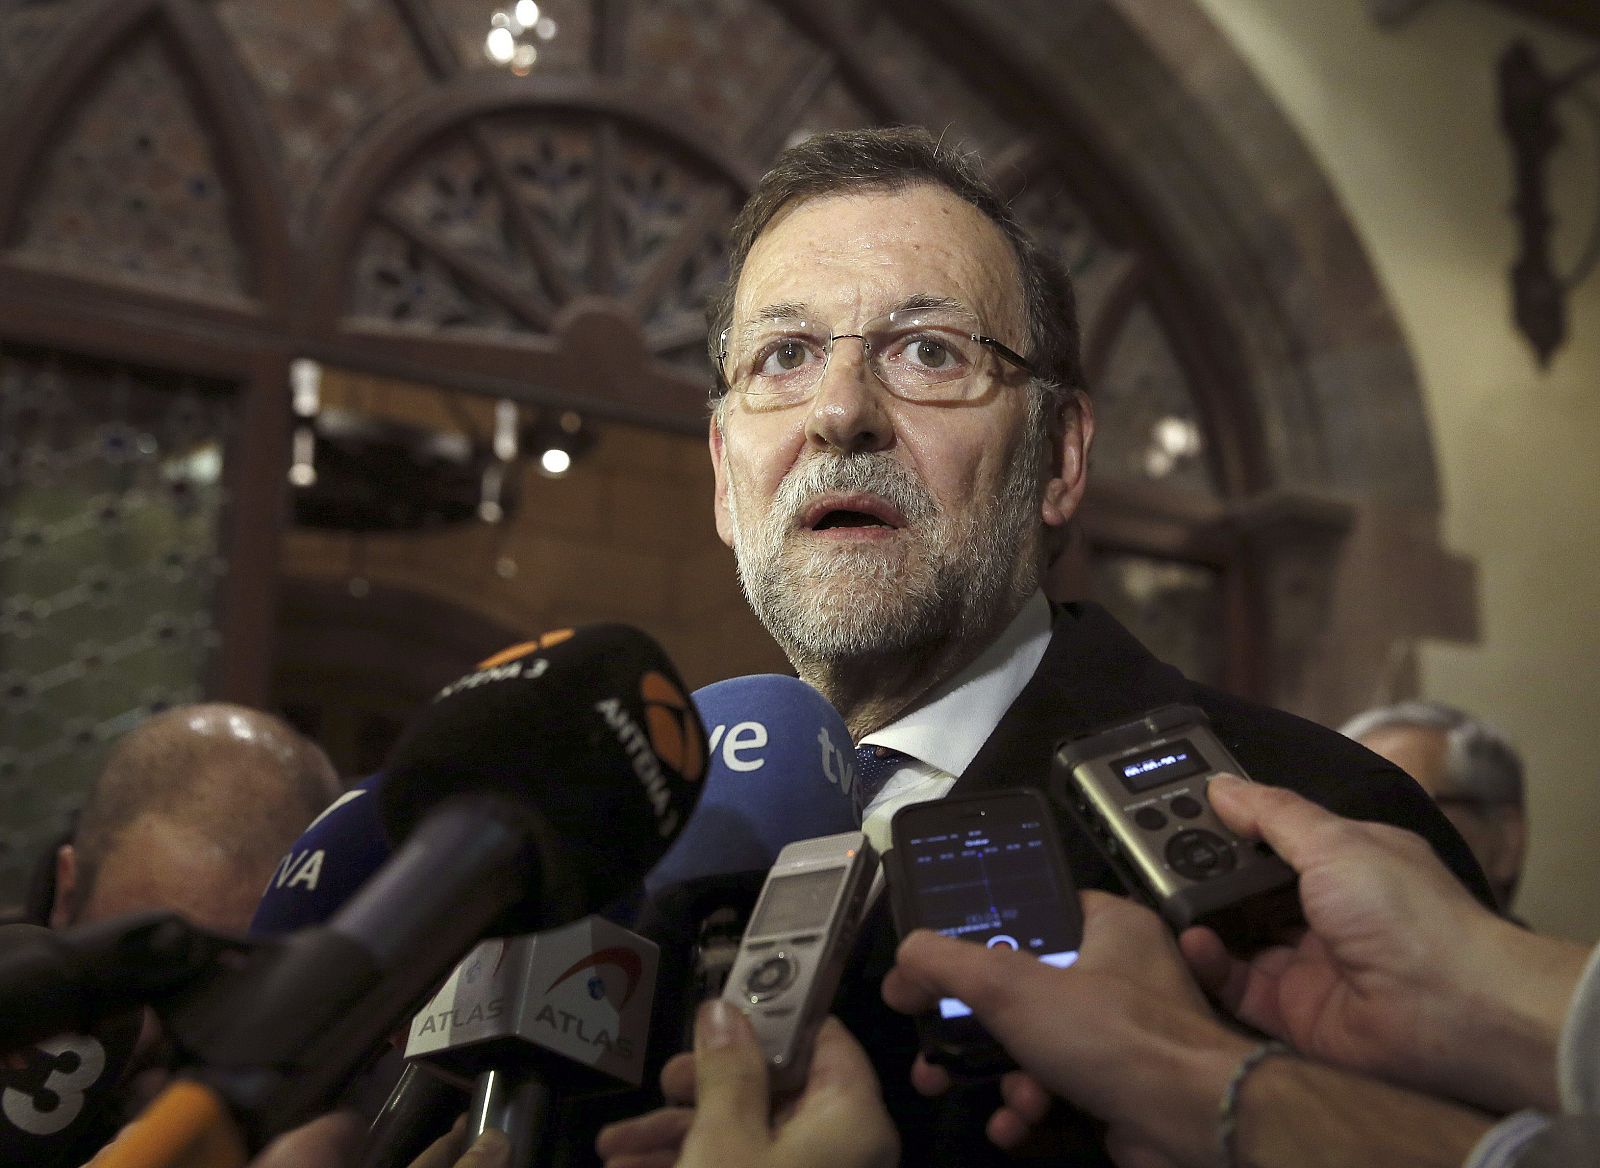 El presidente del Gobierno, Mariano Rajoy, afirma que España reforzará su seguridad tras el atentado terrorista al semanario 'Charlie Hebdo' en París.